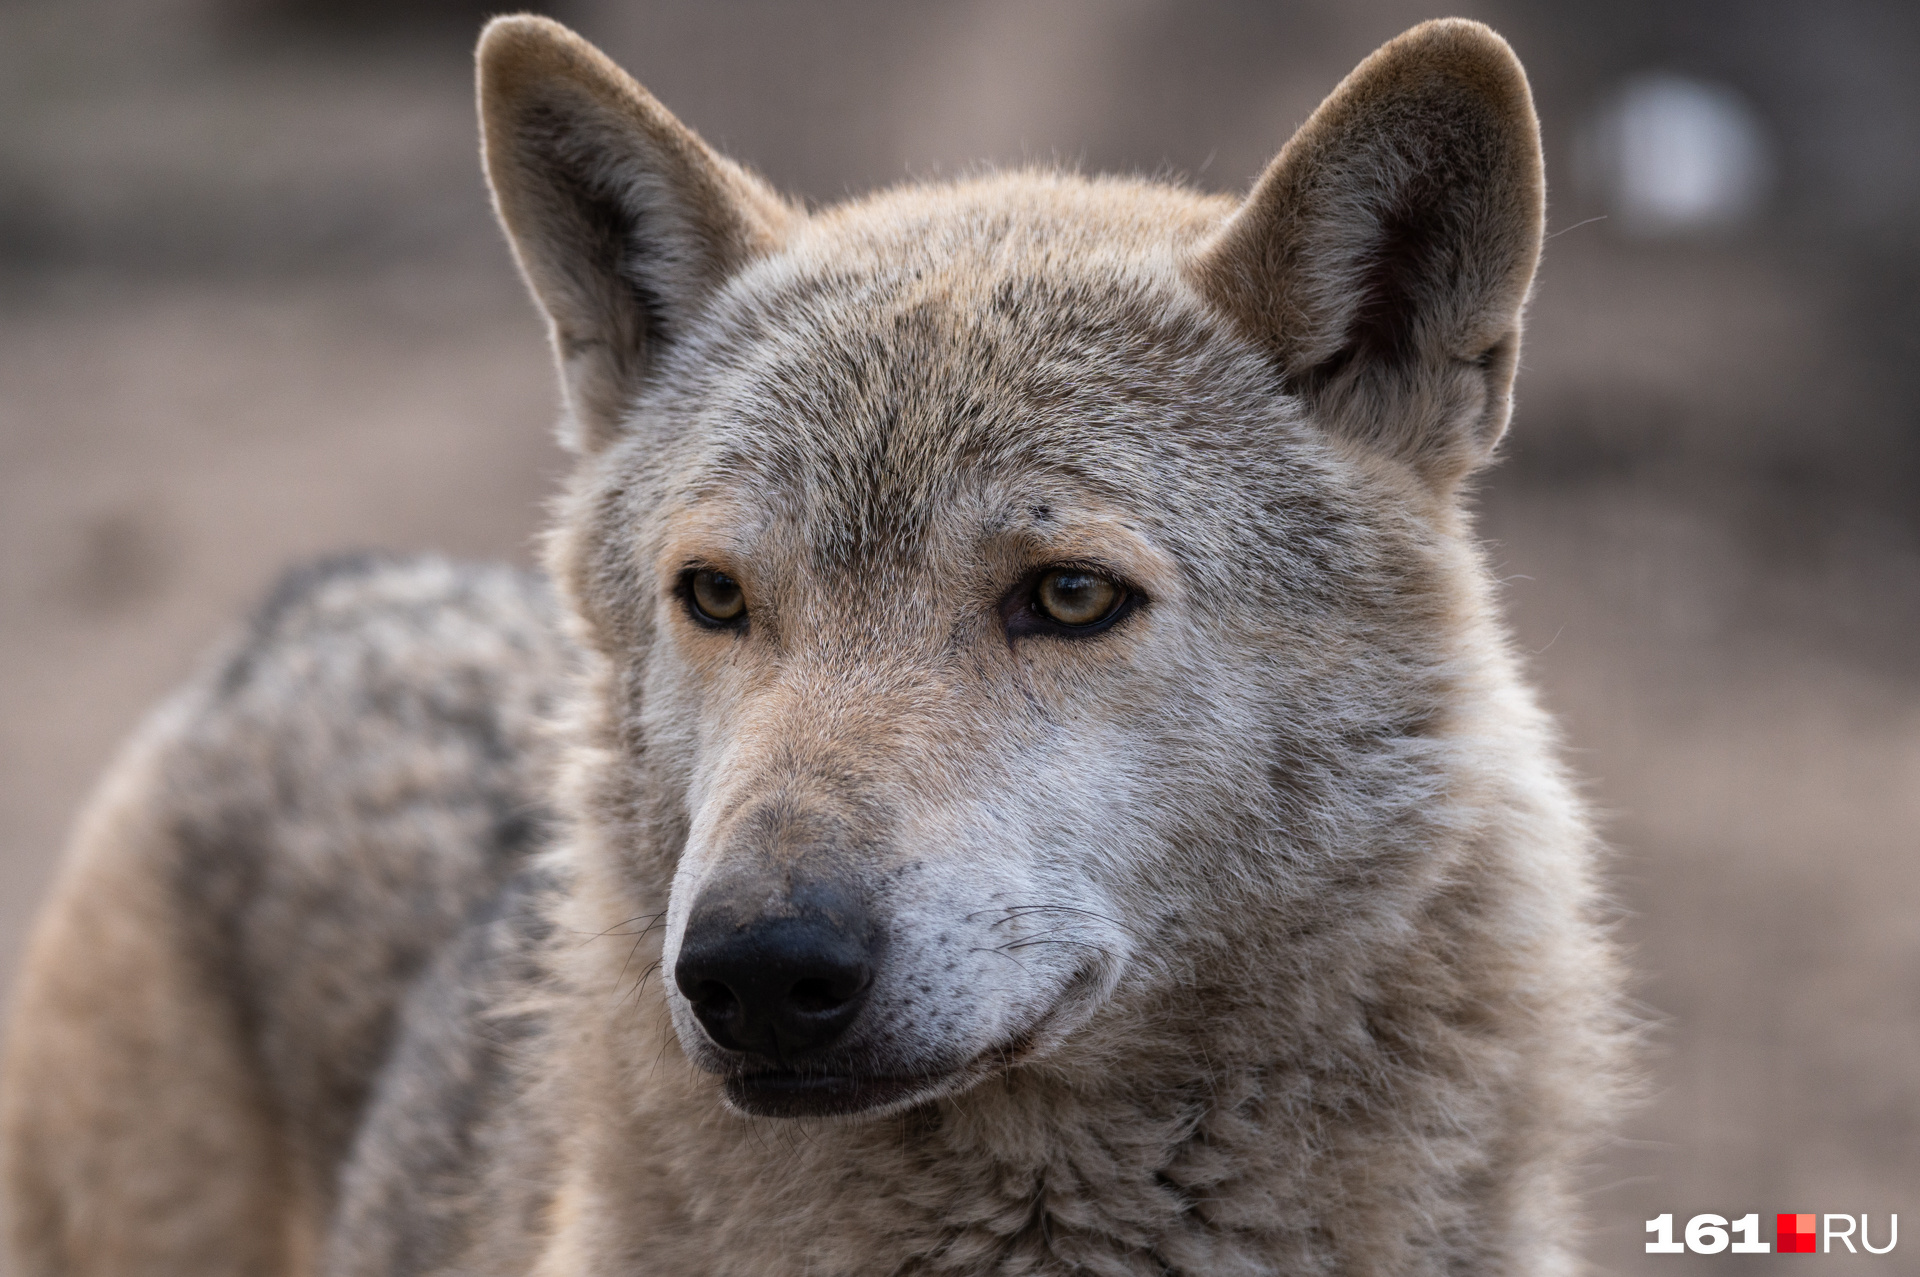 Популяция волков выросла в 3,5 раза больше допустимого в Забайкалье